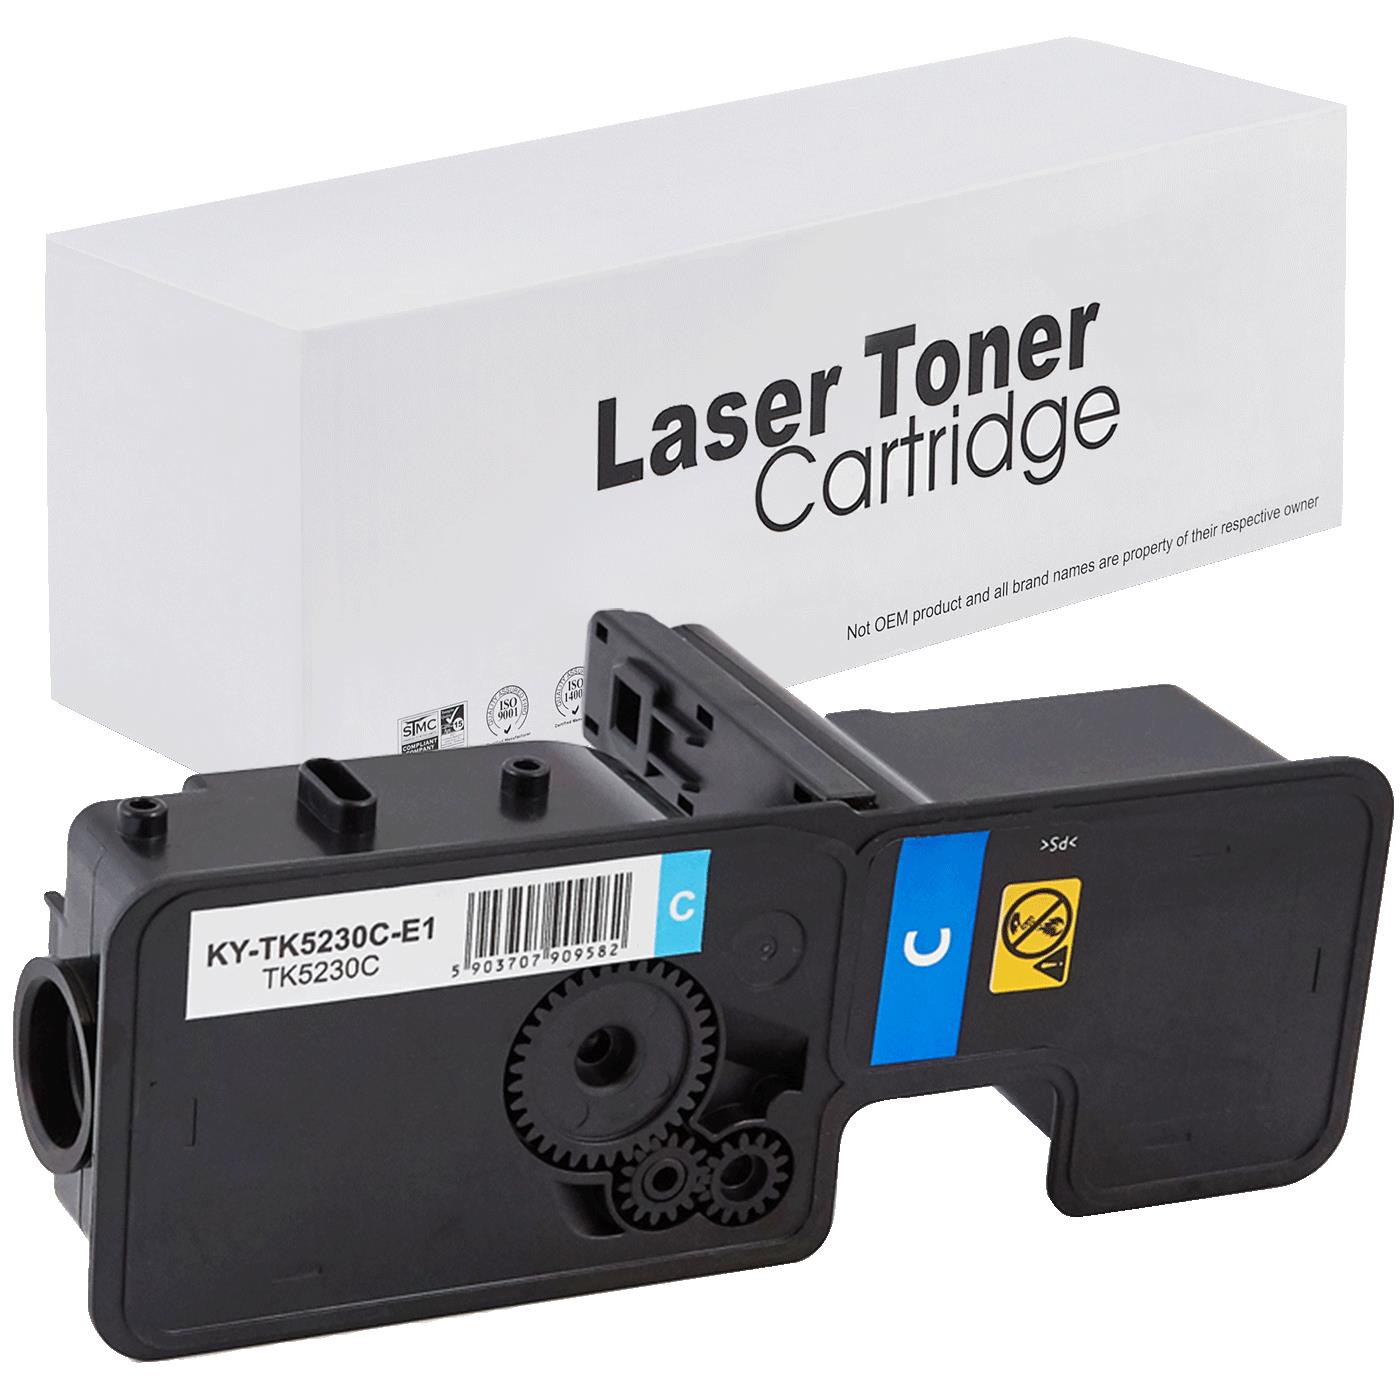 съвместима тонер касета за принтери и печатащи устройства на Kyocera Mita Ecosys M5521cdw Toner KY-TK5230C | TK5230C. Ниски цени, прецизно изпълнение, високо качество.